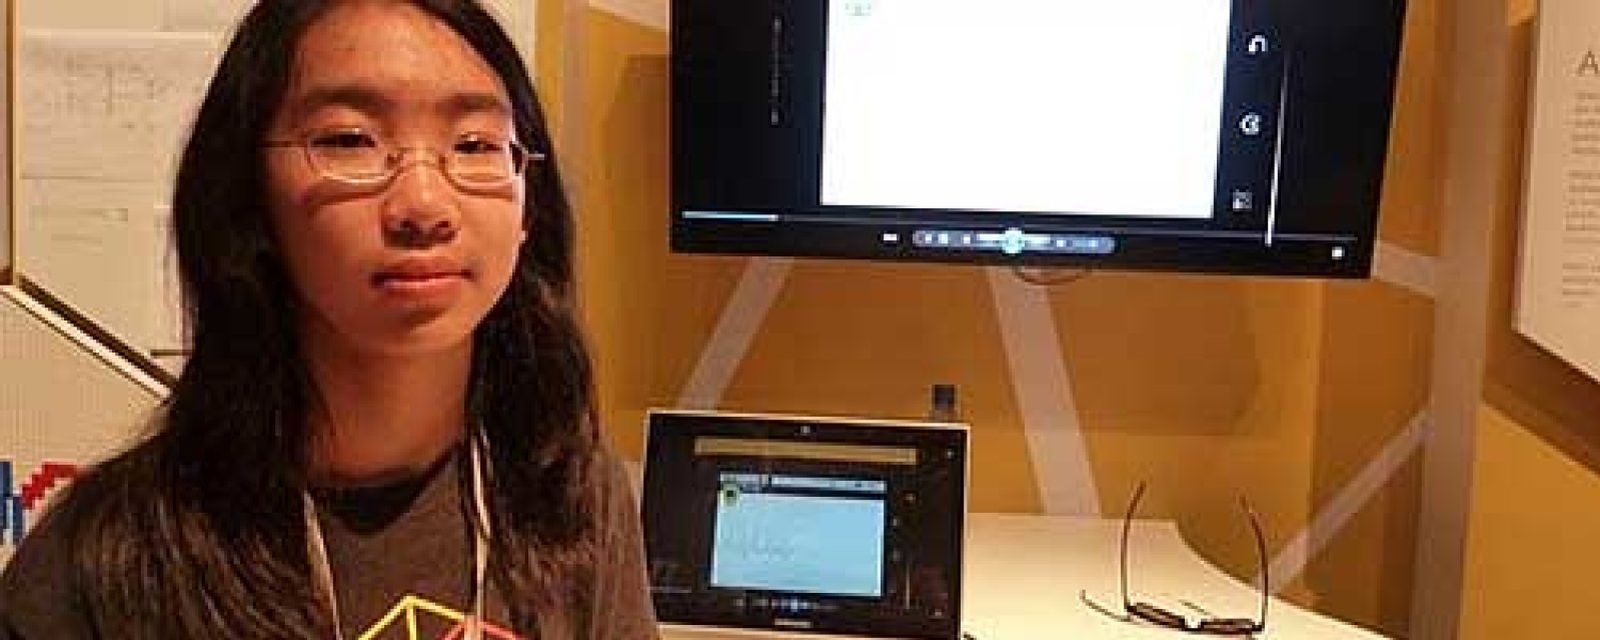 Foto: Una adolescente crea un sistema para realizar electrocardiogramas con el móvil